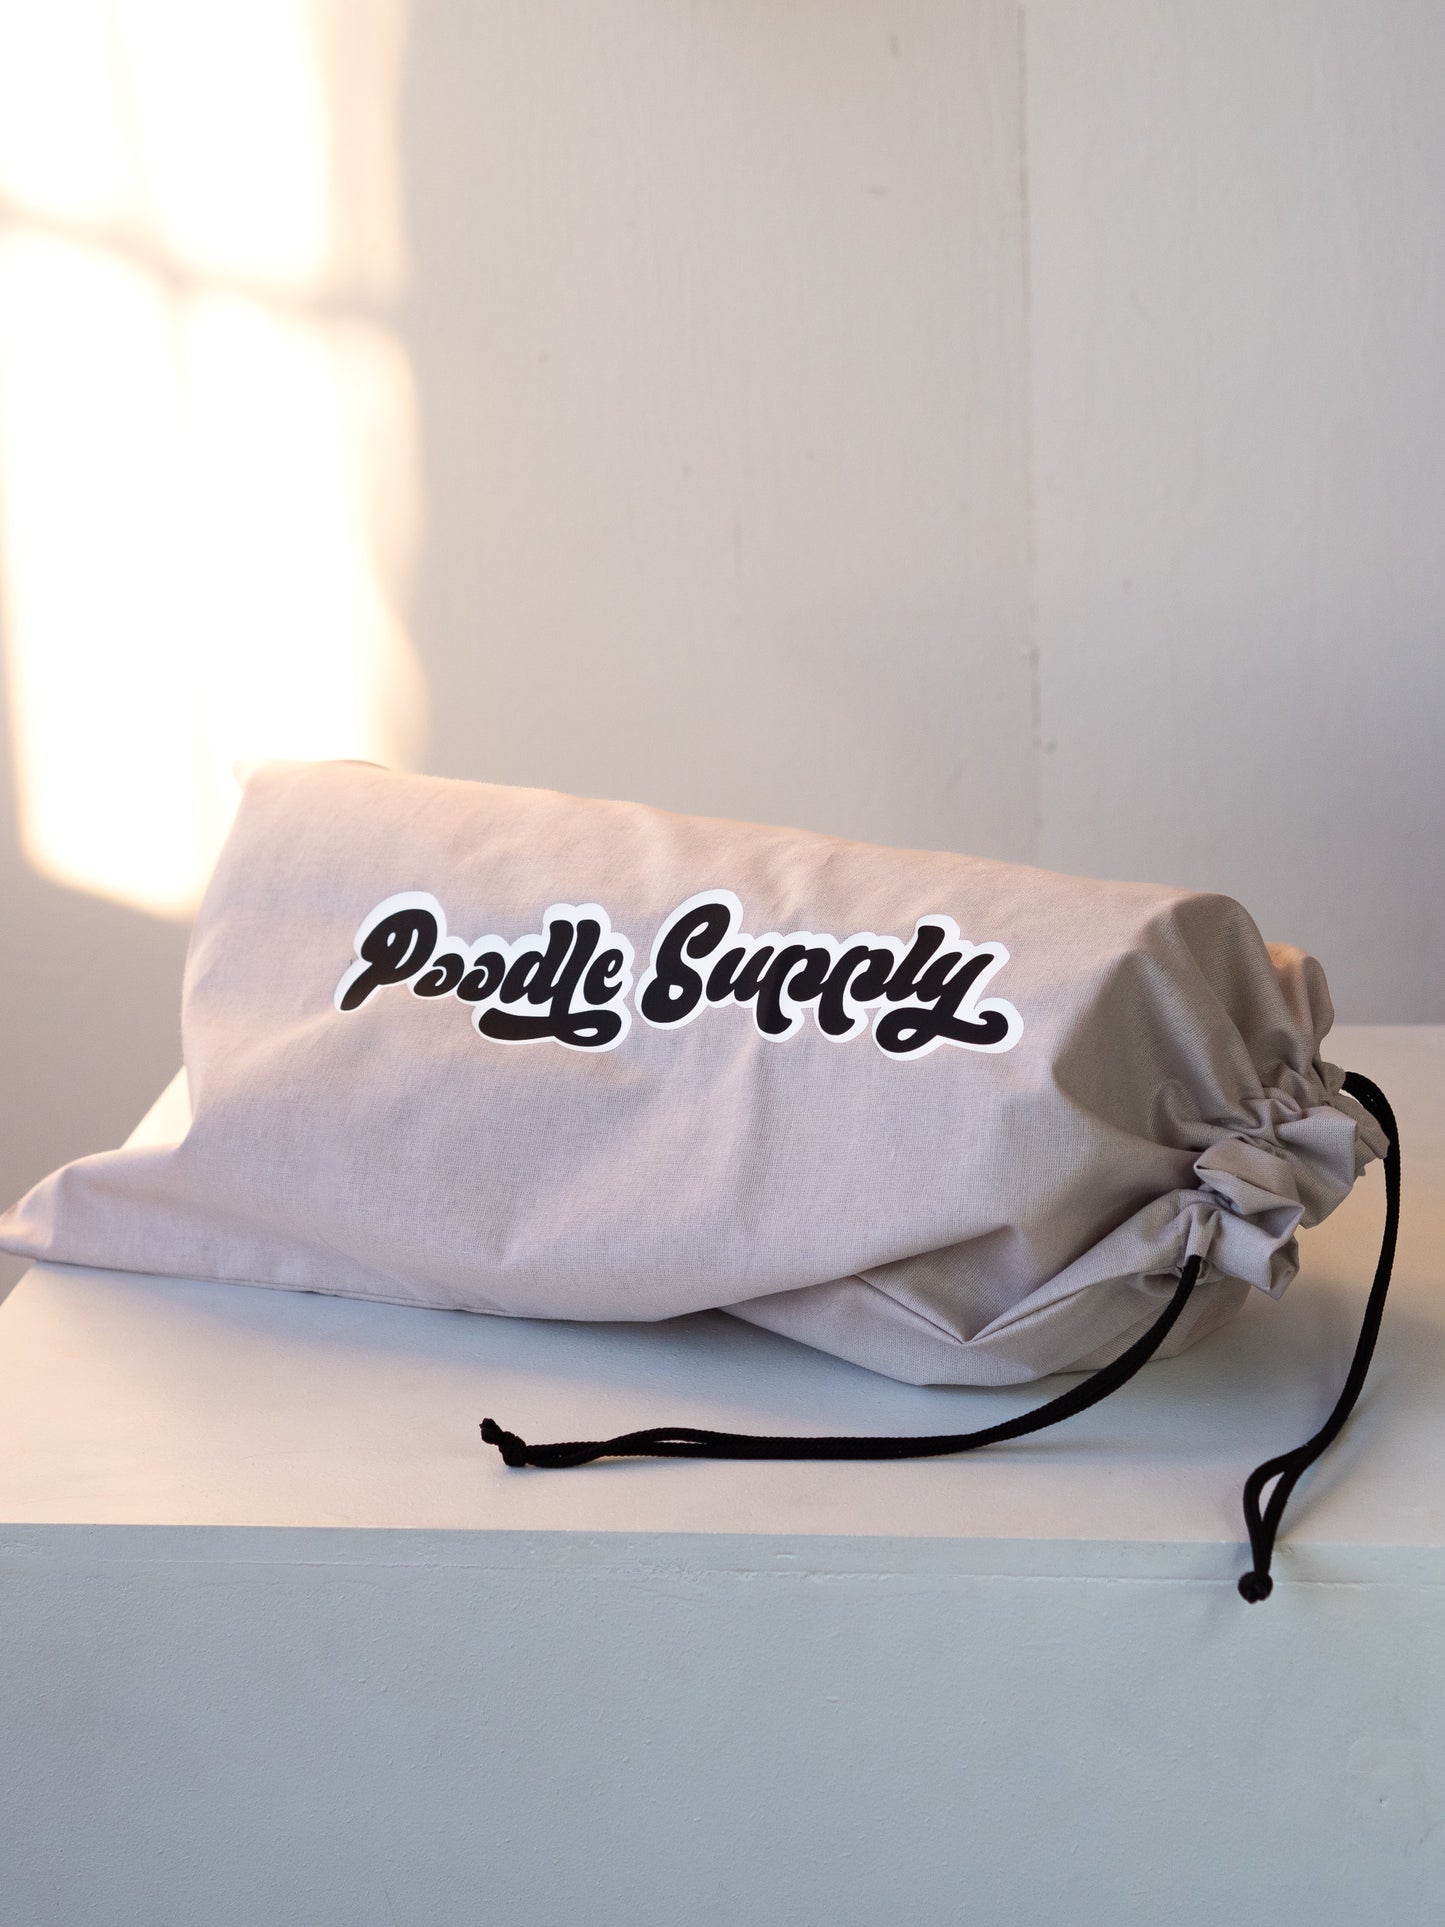 Poodle Supply Top Knot Pillow - Princess Bubblegum - Large